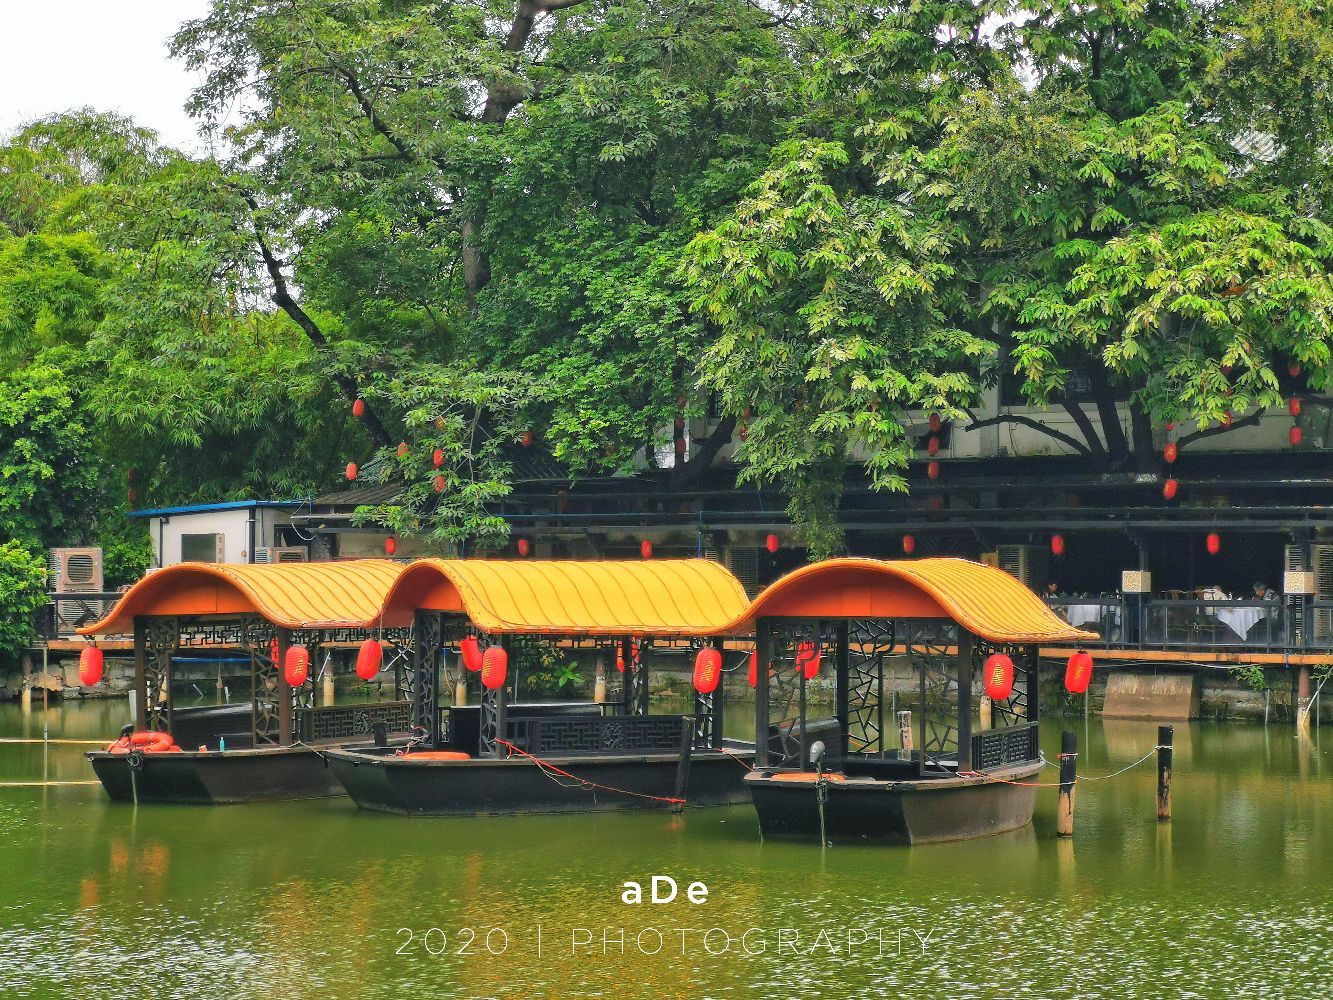 唐荔园食艺馆是广州一家极少数的中式园林酒家,紧邻荔湾湖公园